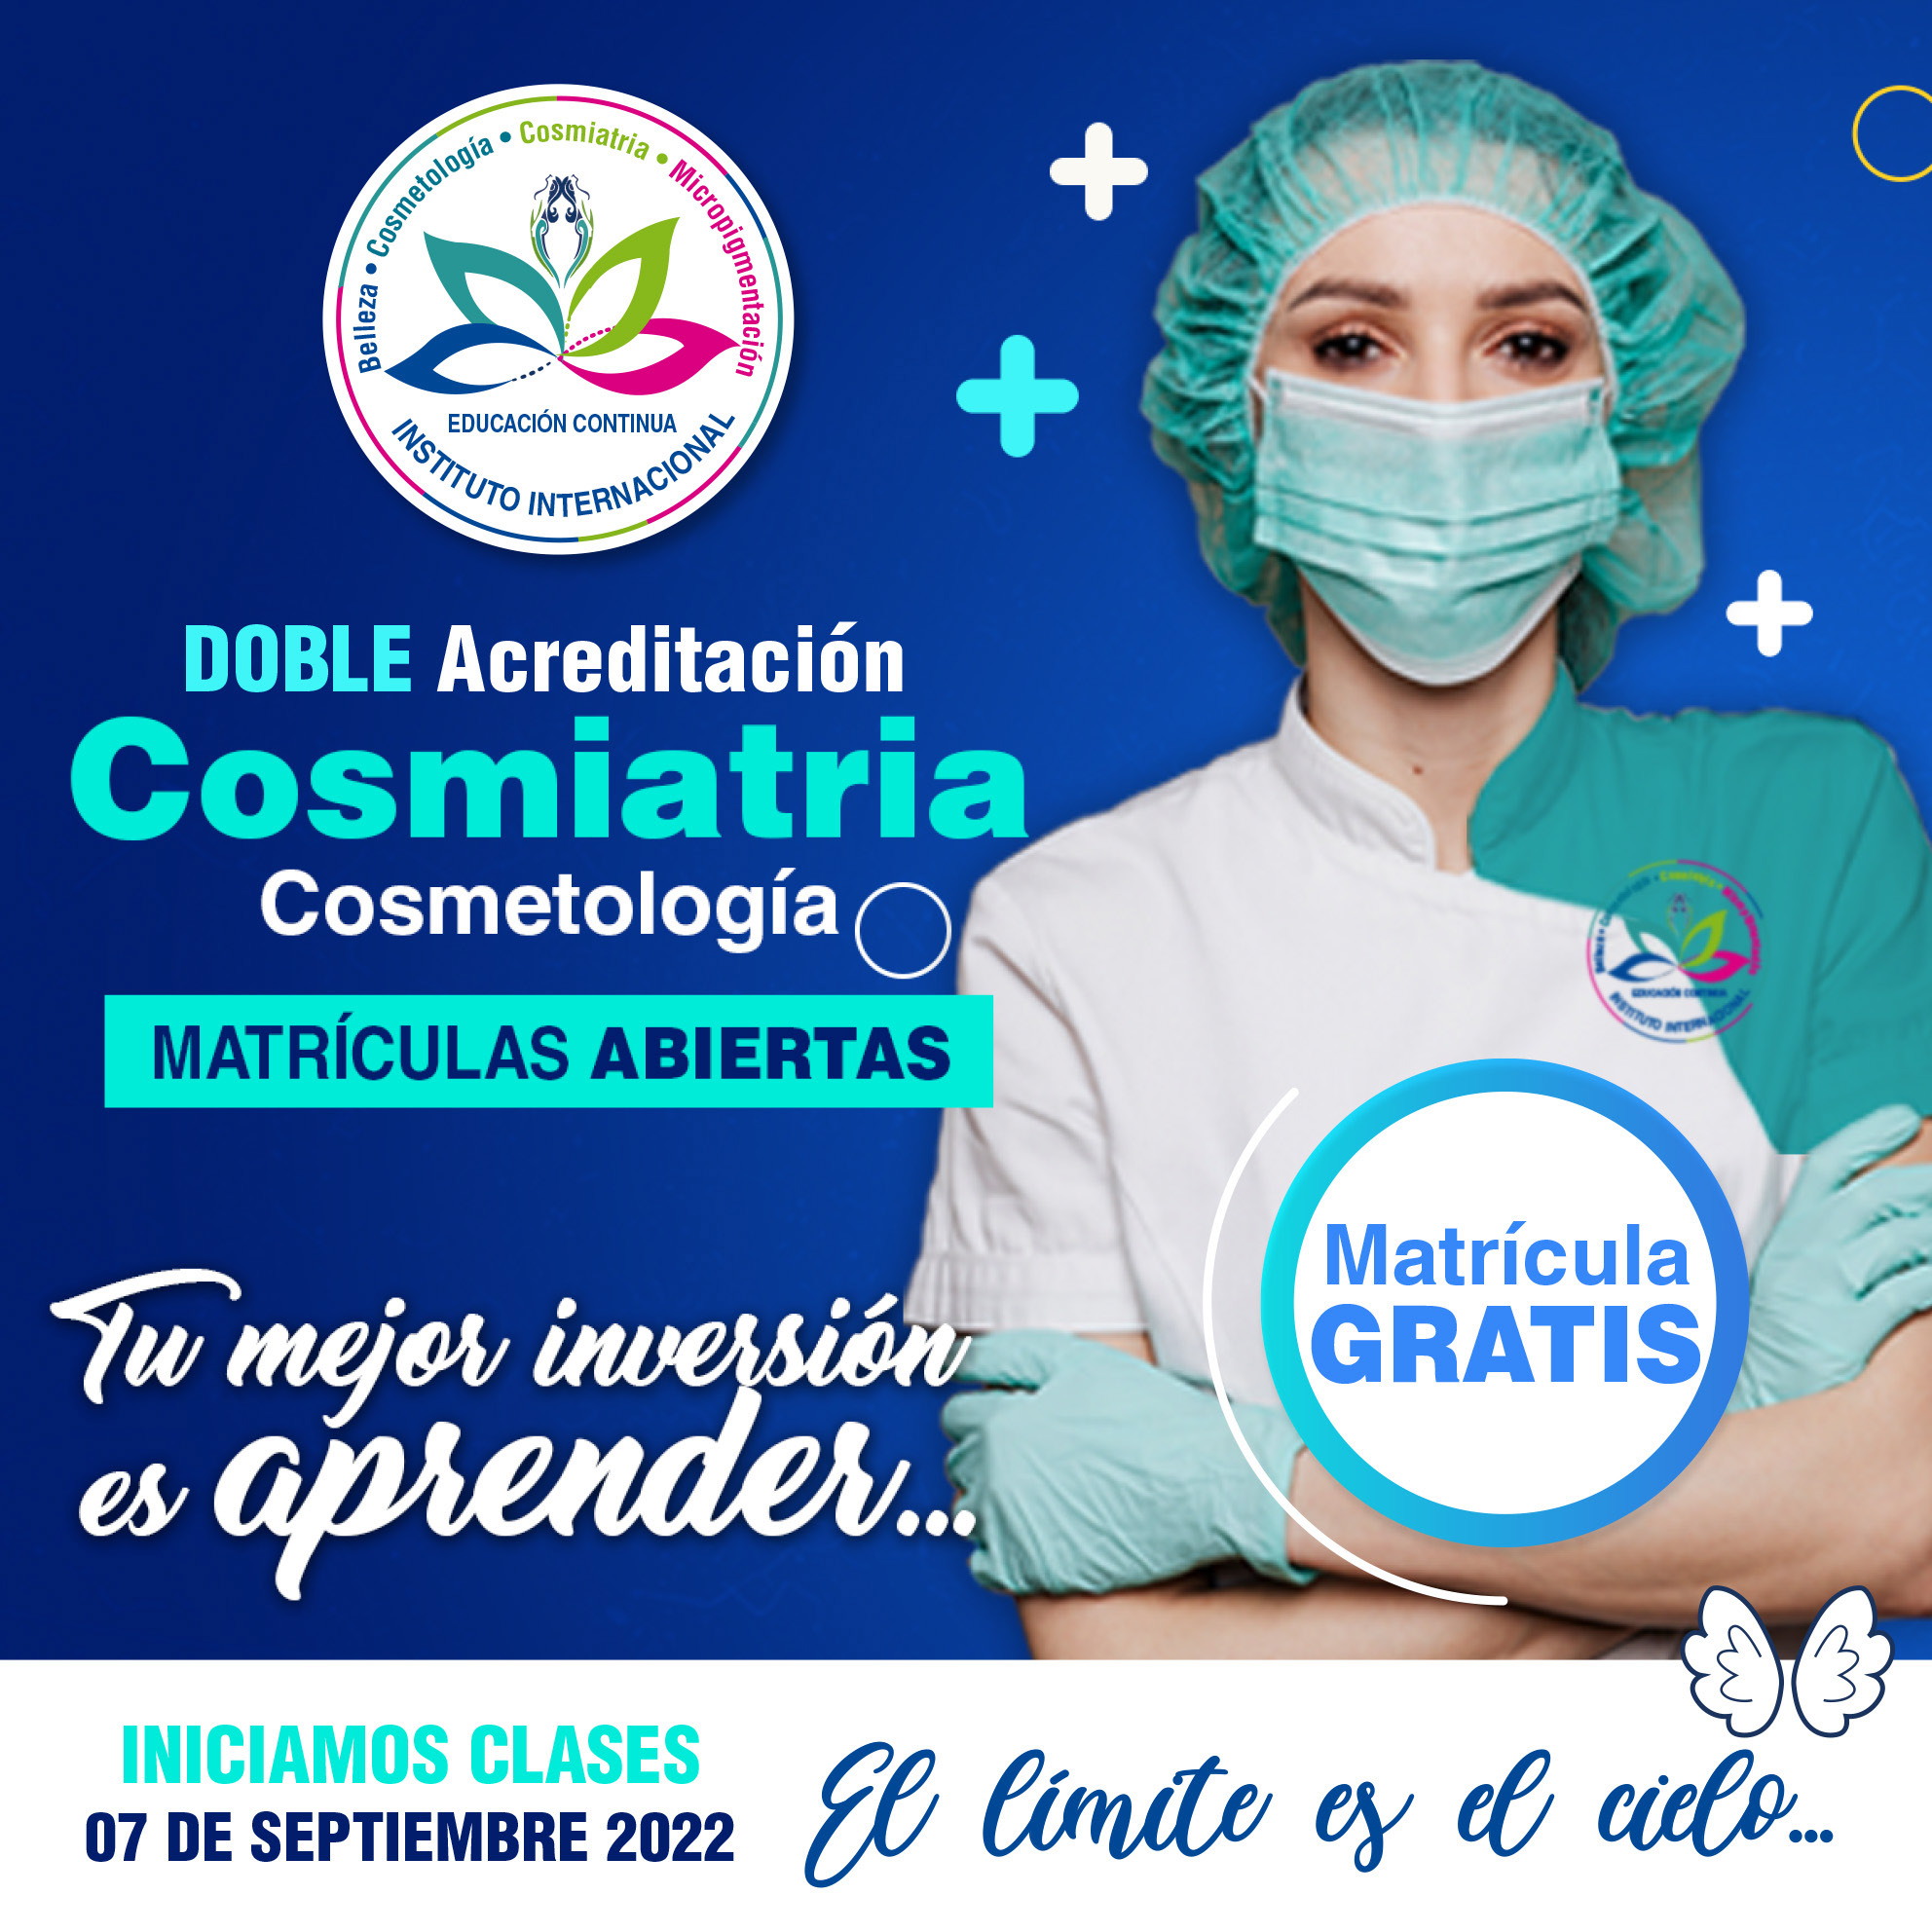 Cosmiatria y Cosmetología - Doble Acreditación Quito - Ecuador - Instituto  Internacional